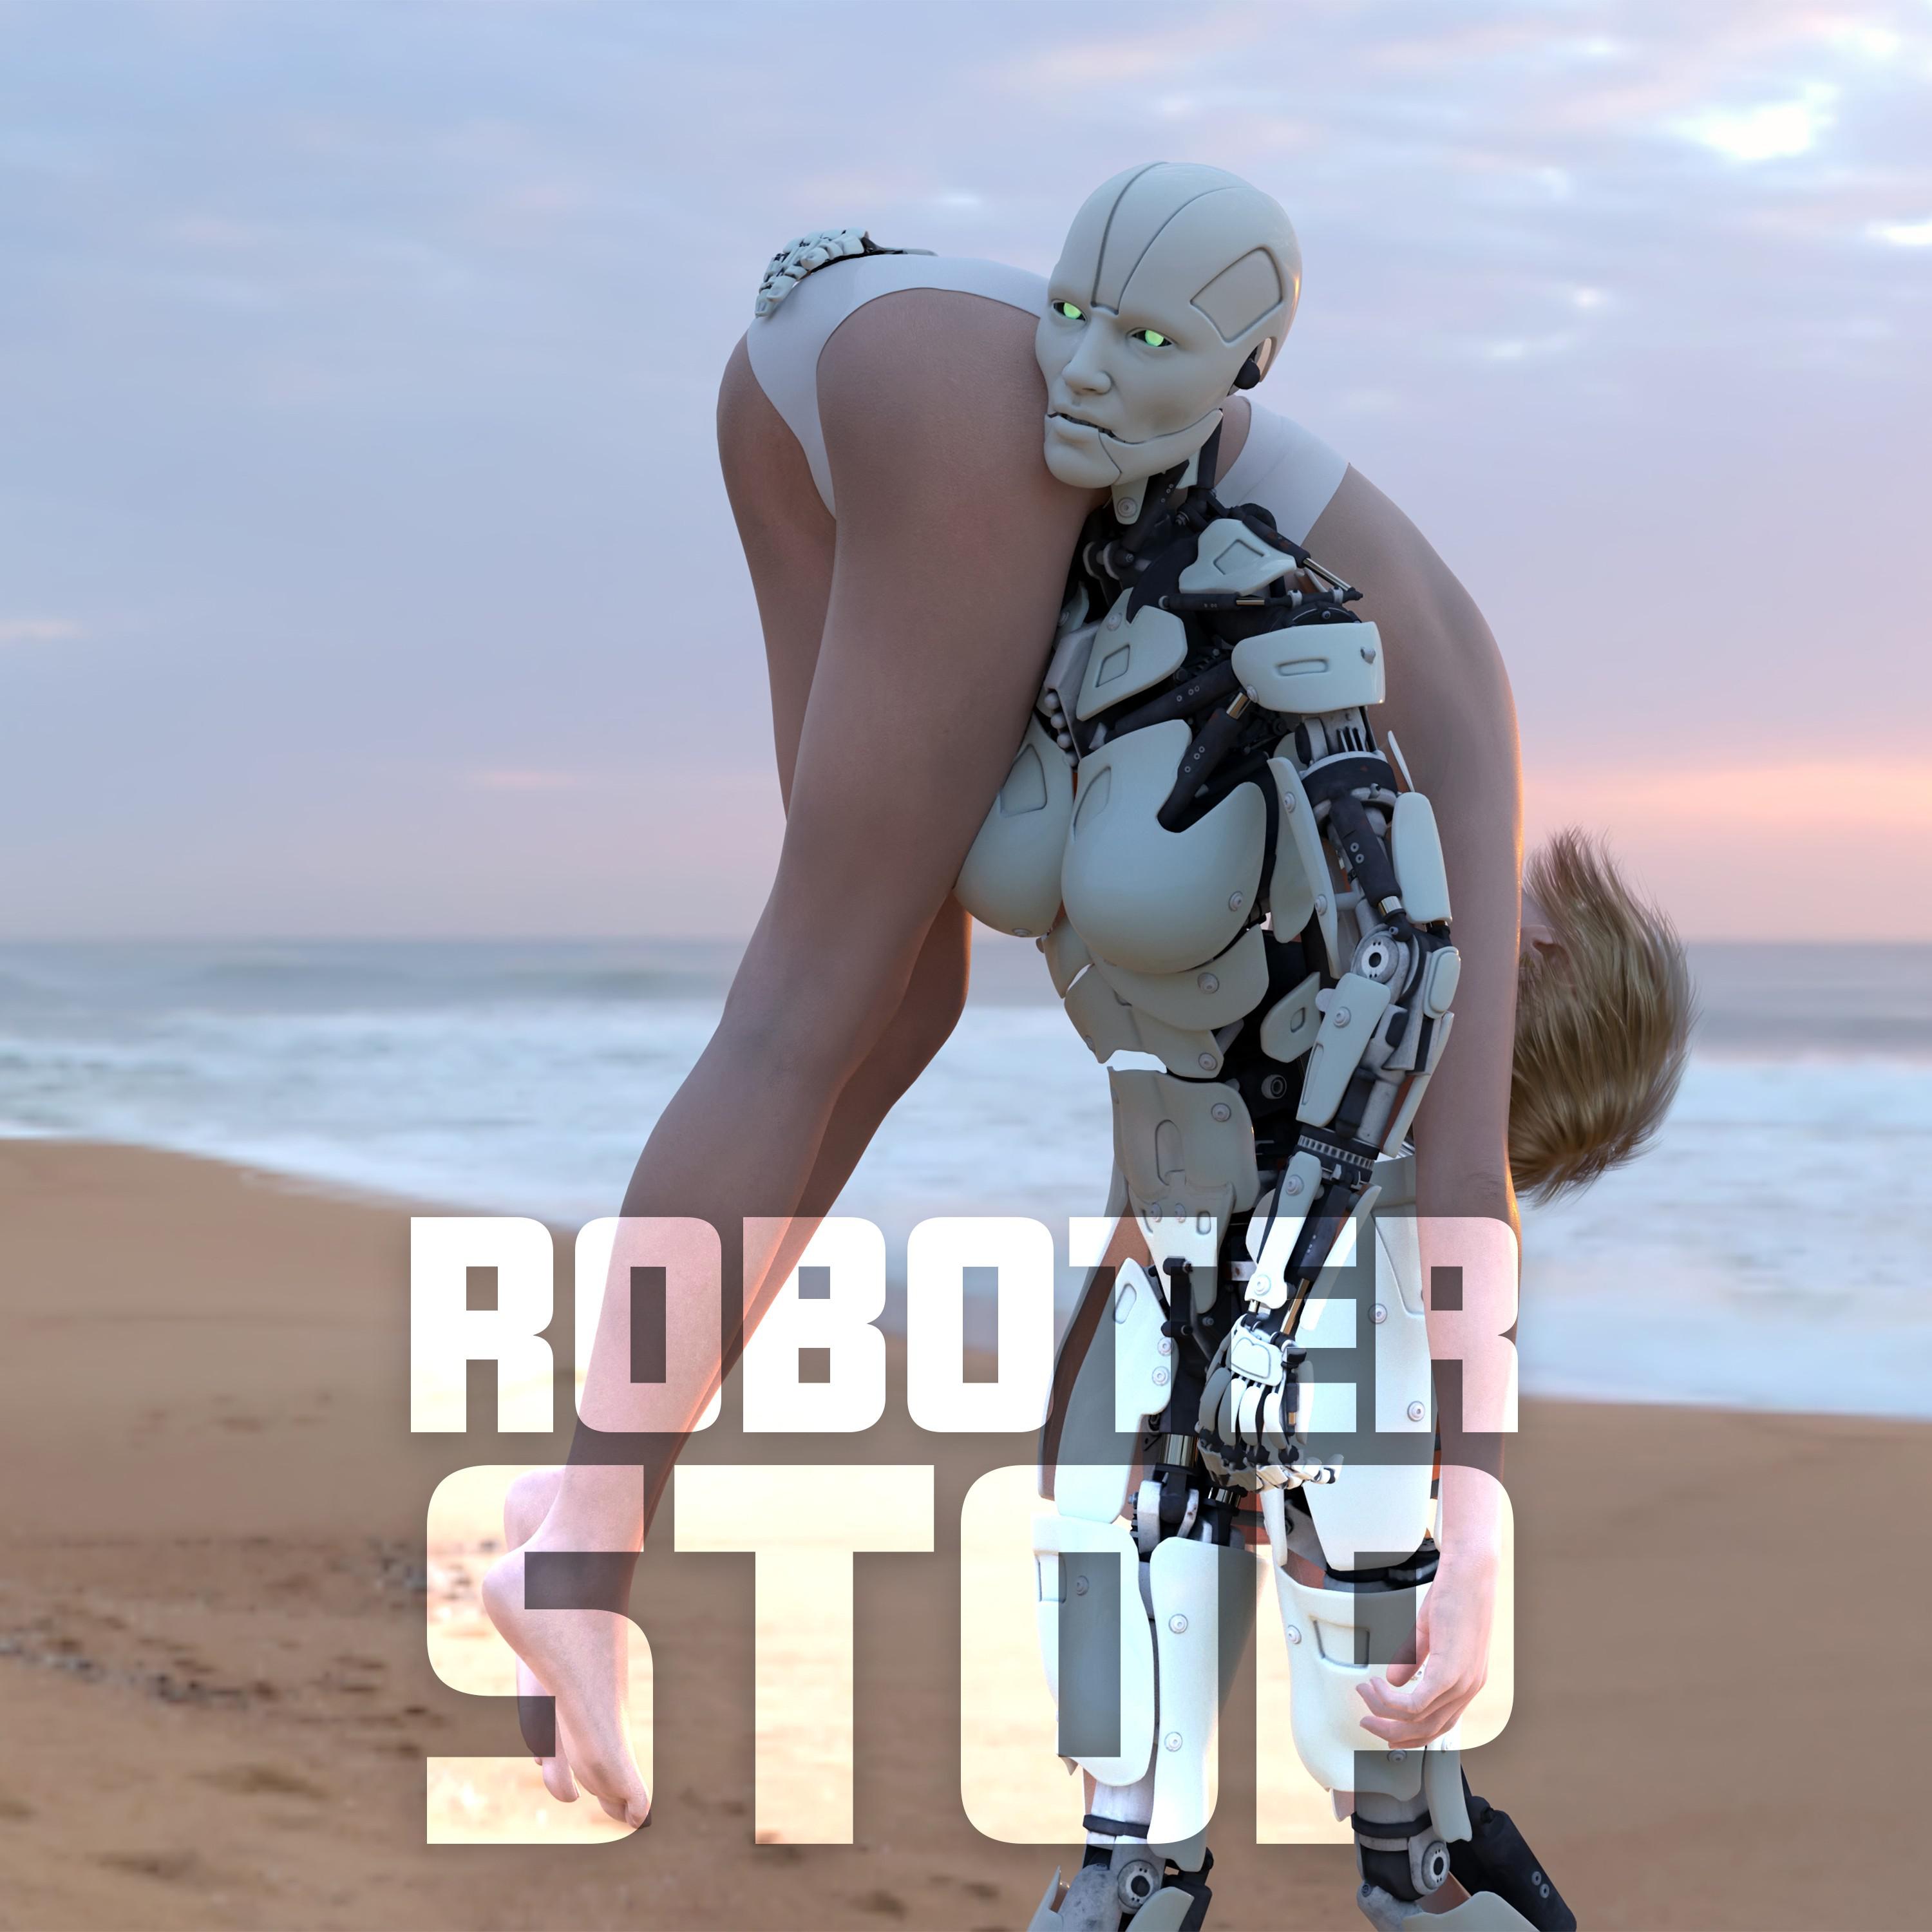 Roboter - Stop War (Bombers Remix)